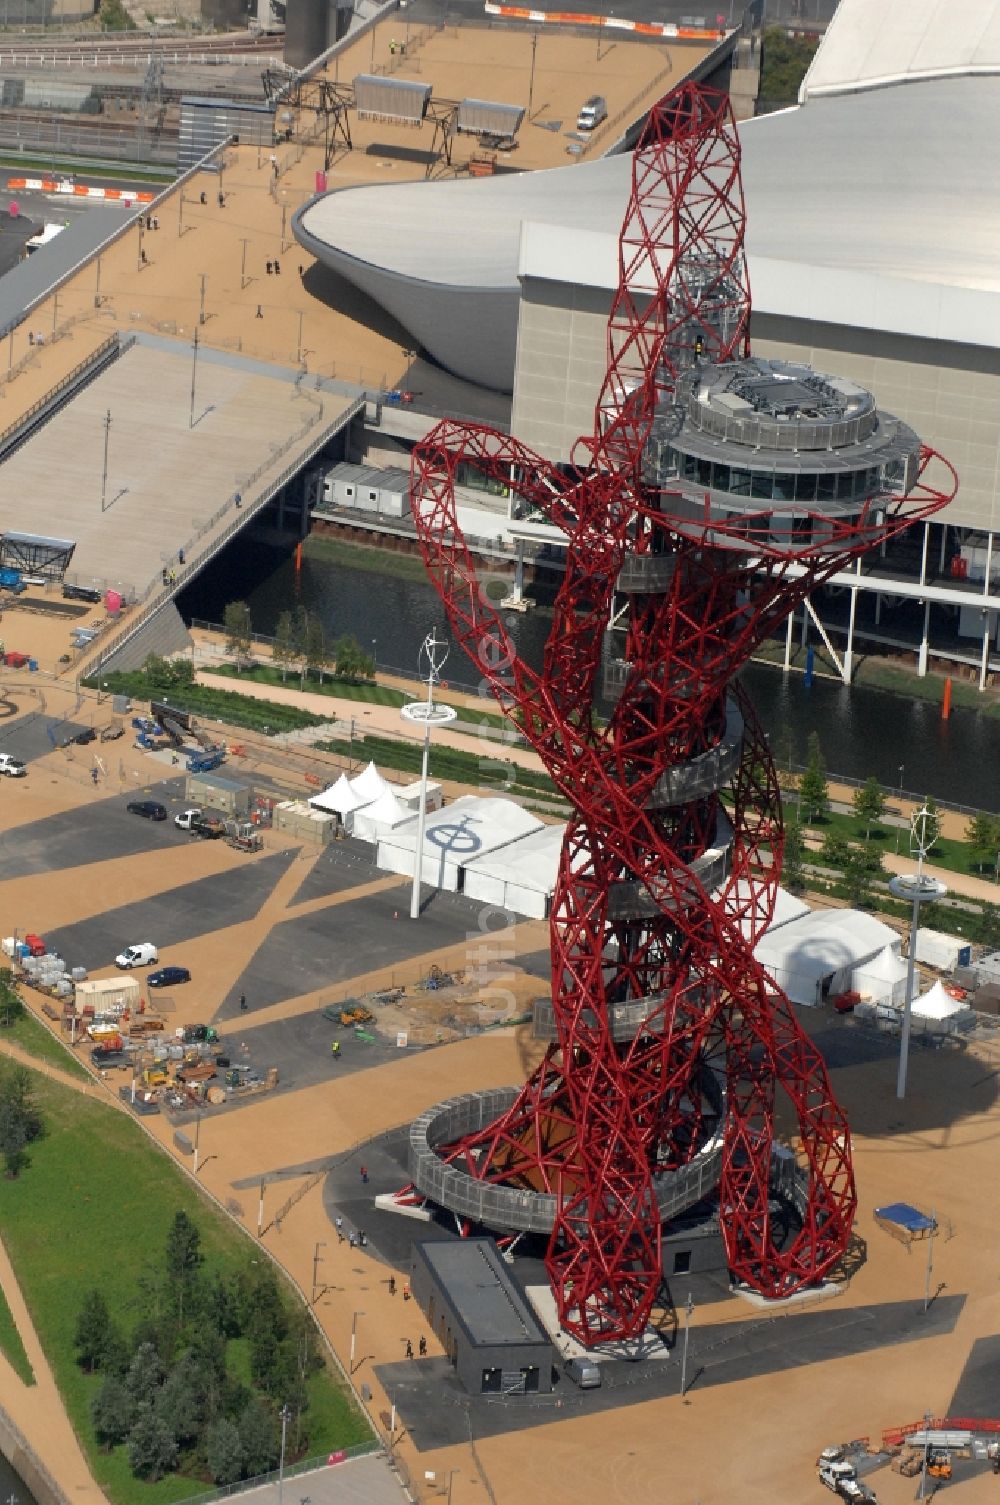 London aus der Vogelperspektive: London Olympia 2012 - Aussichtsturm ArcelorMittal Orbit